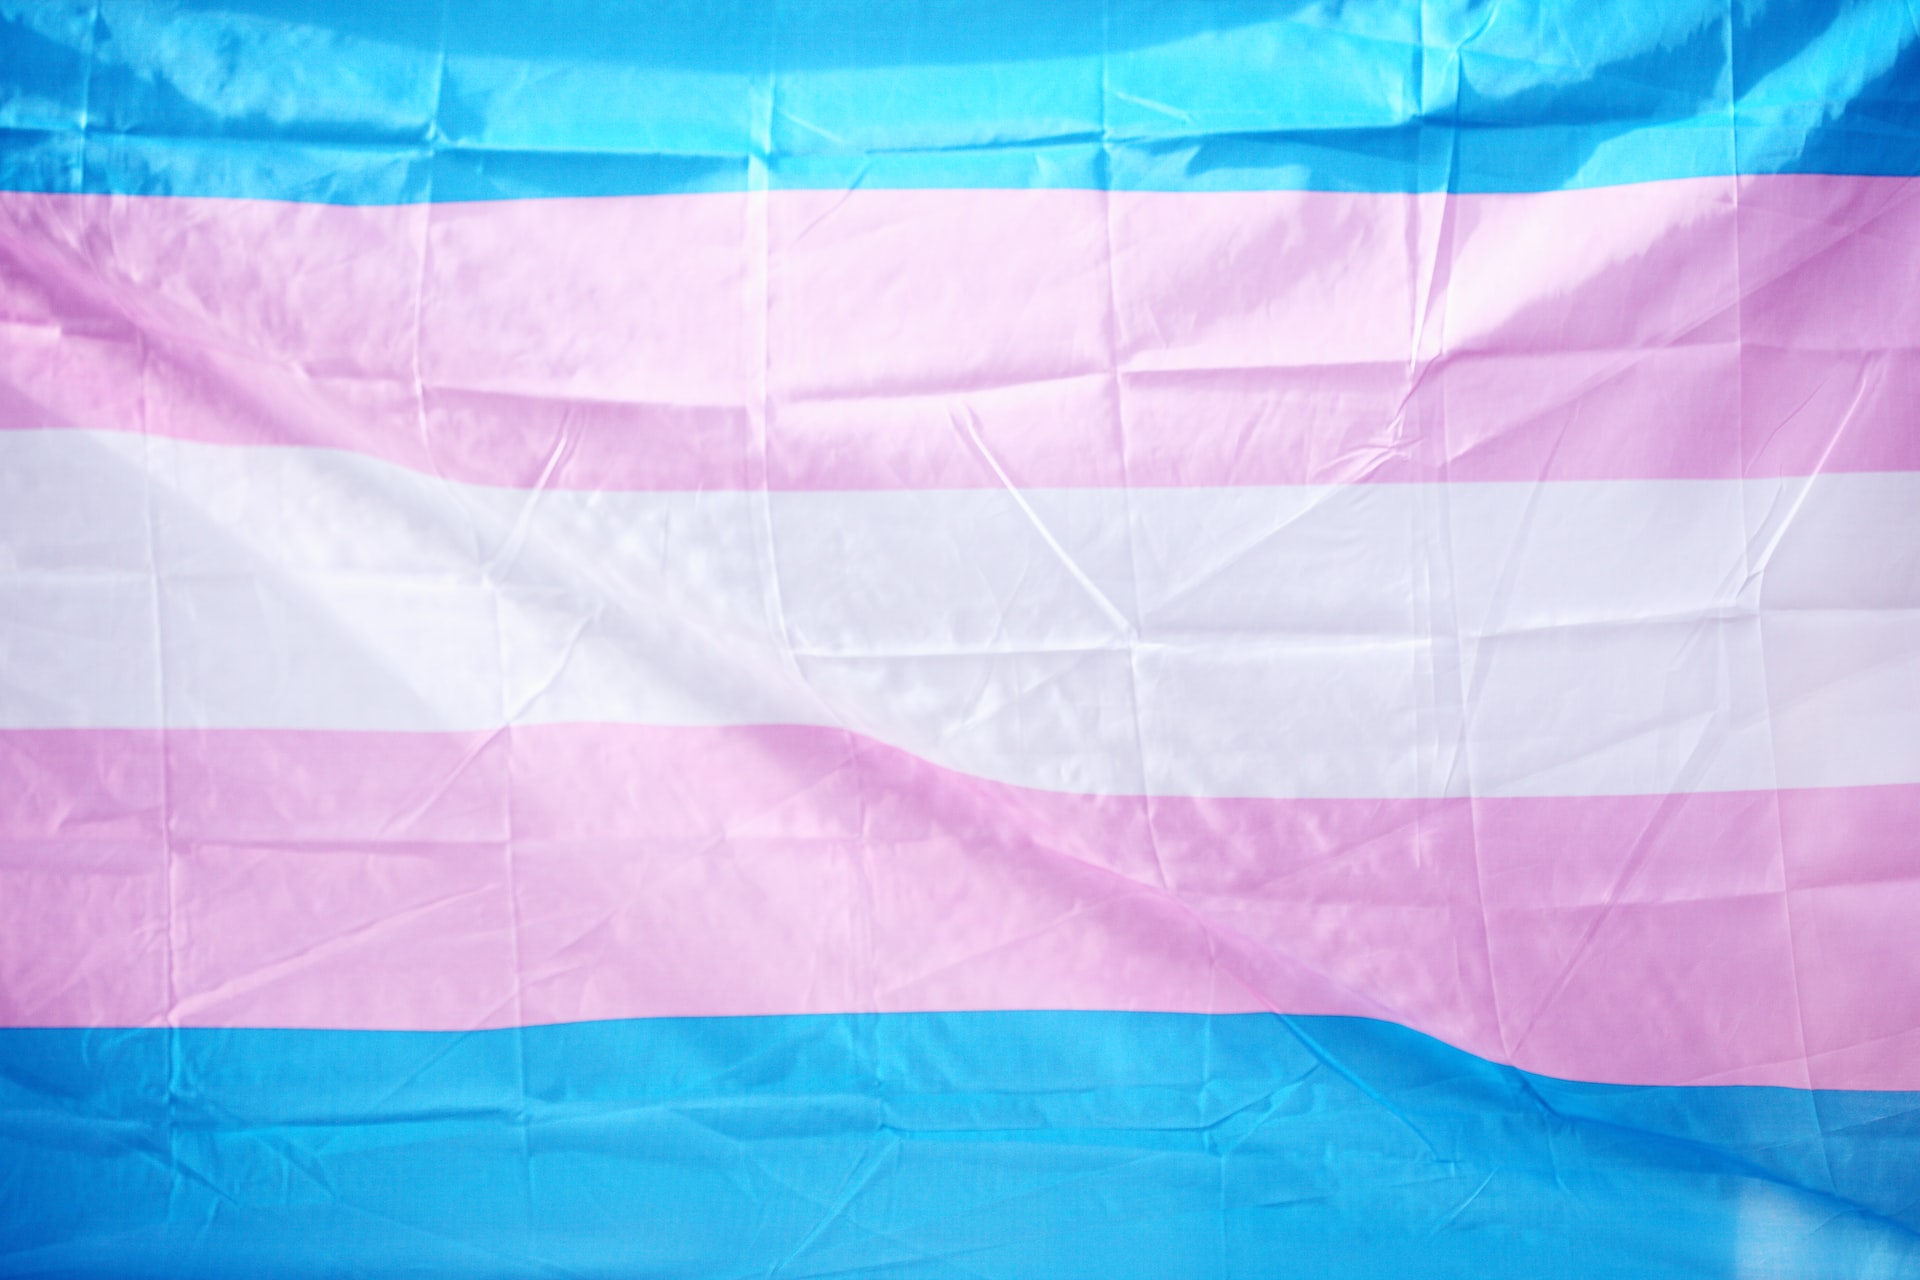 Fotografia da bandeira trans com faixas azul, rosa e branca.